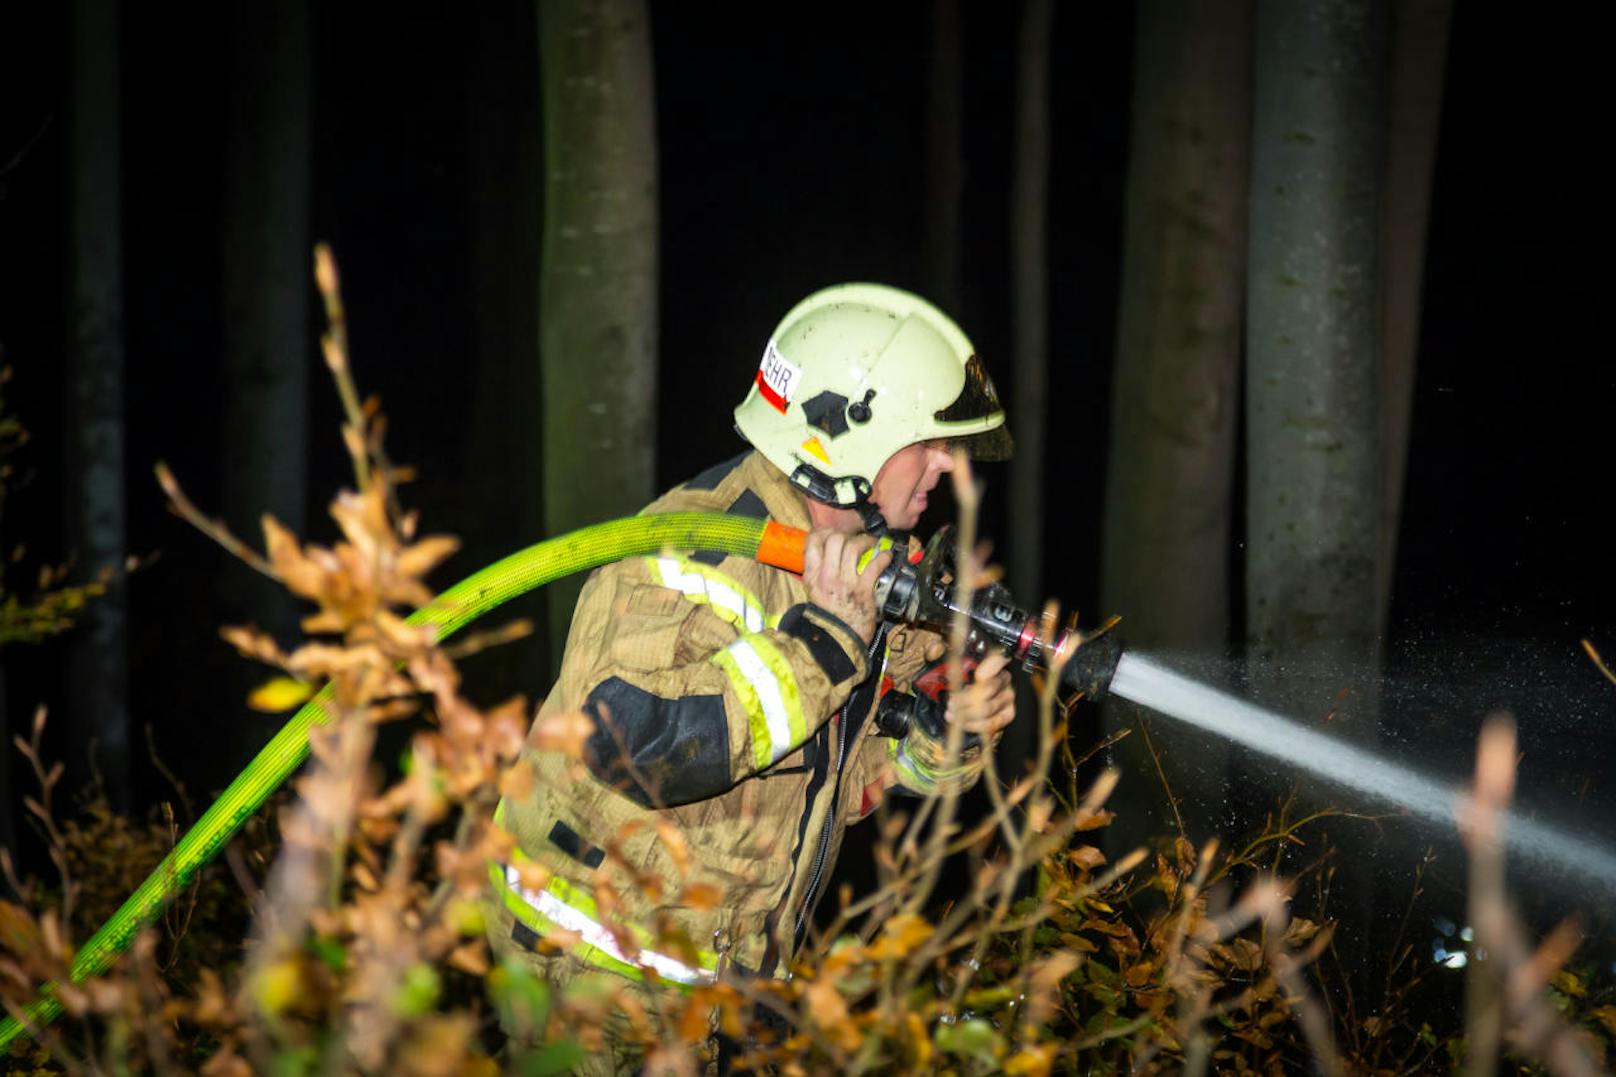 130 Feuerwehrmitglieder löschten den Waldbrand, den zwei Piloten entdeckt hatten.